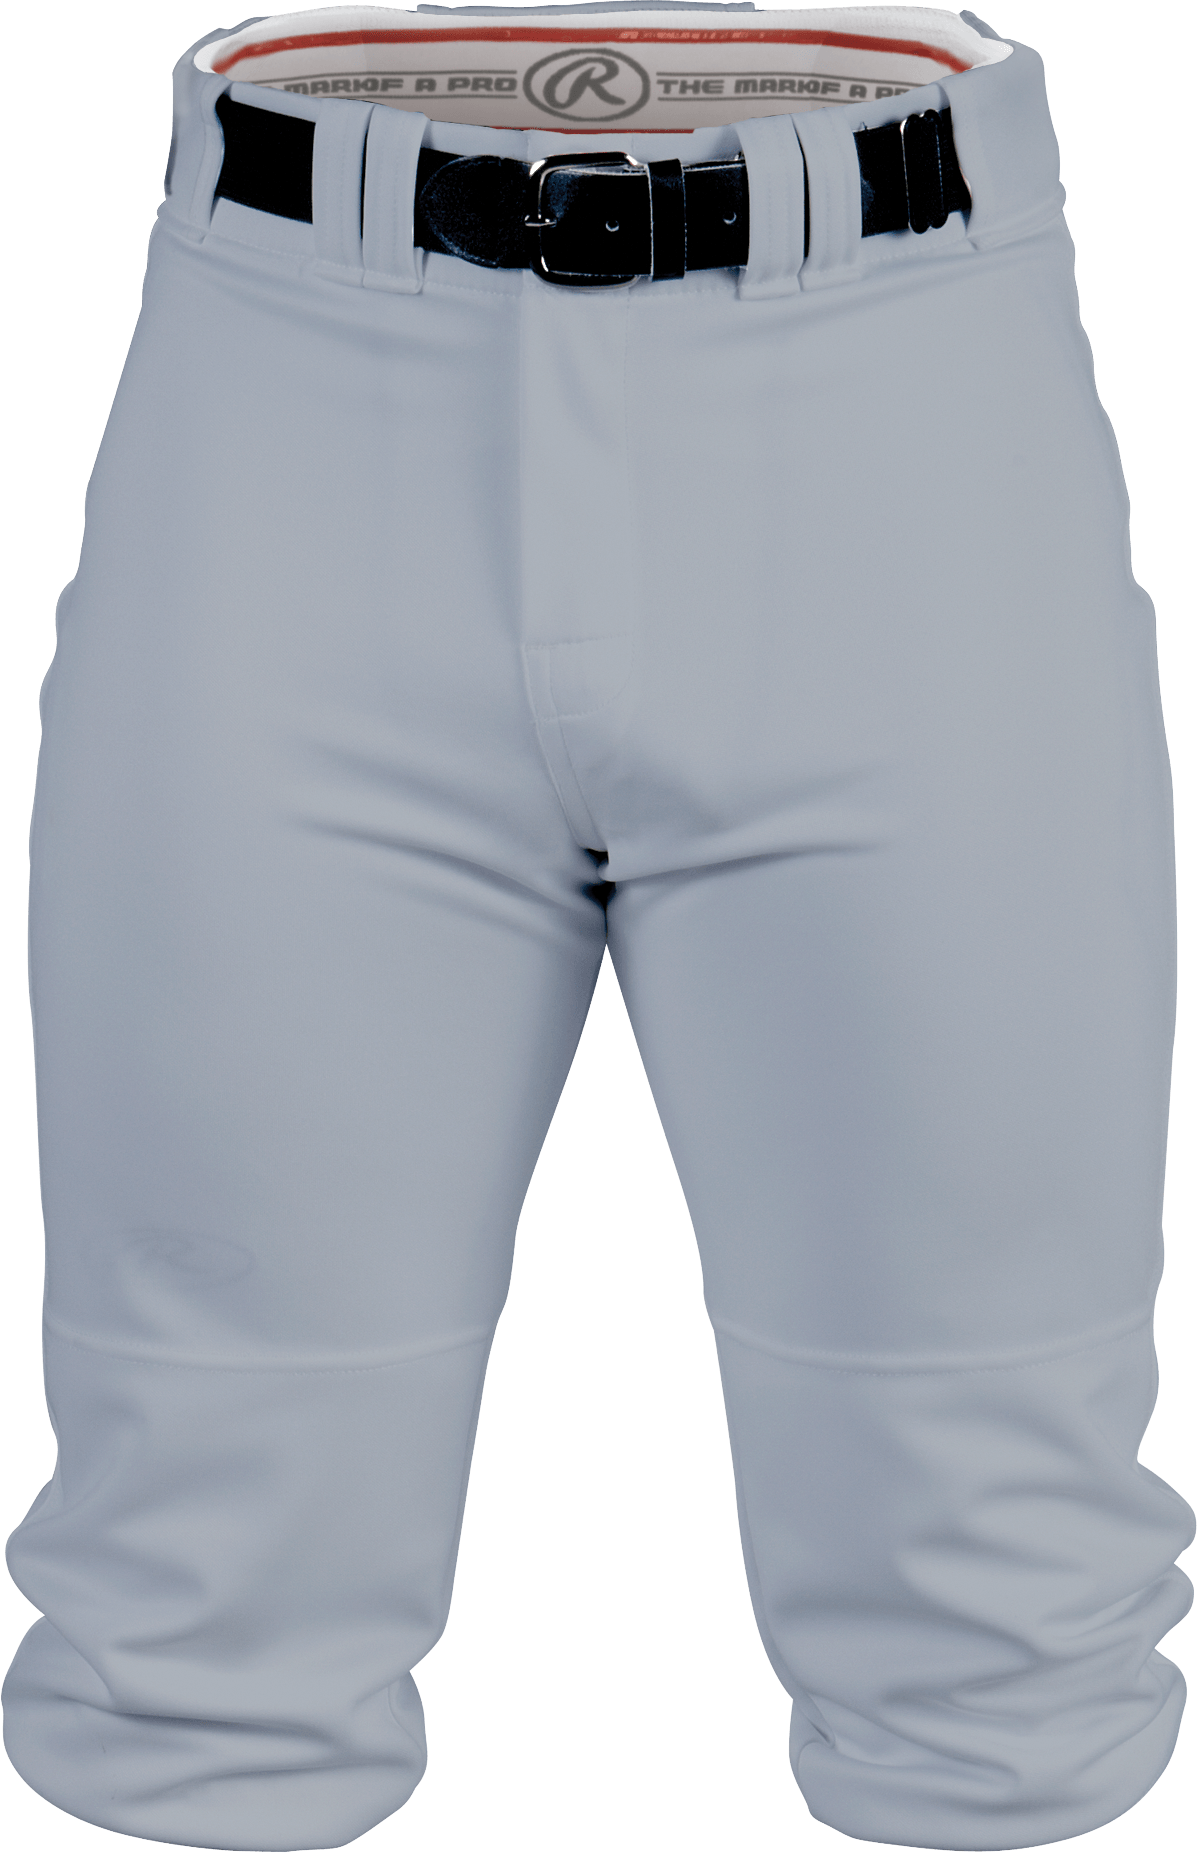 Rawlings Softball Pants Size Chart